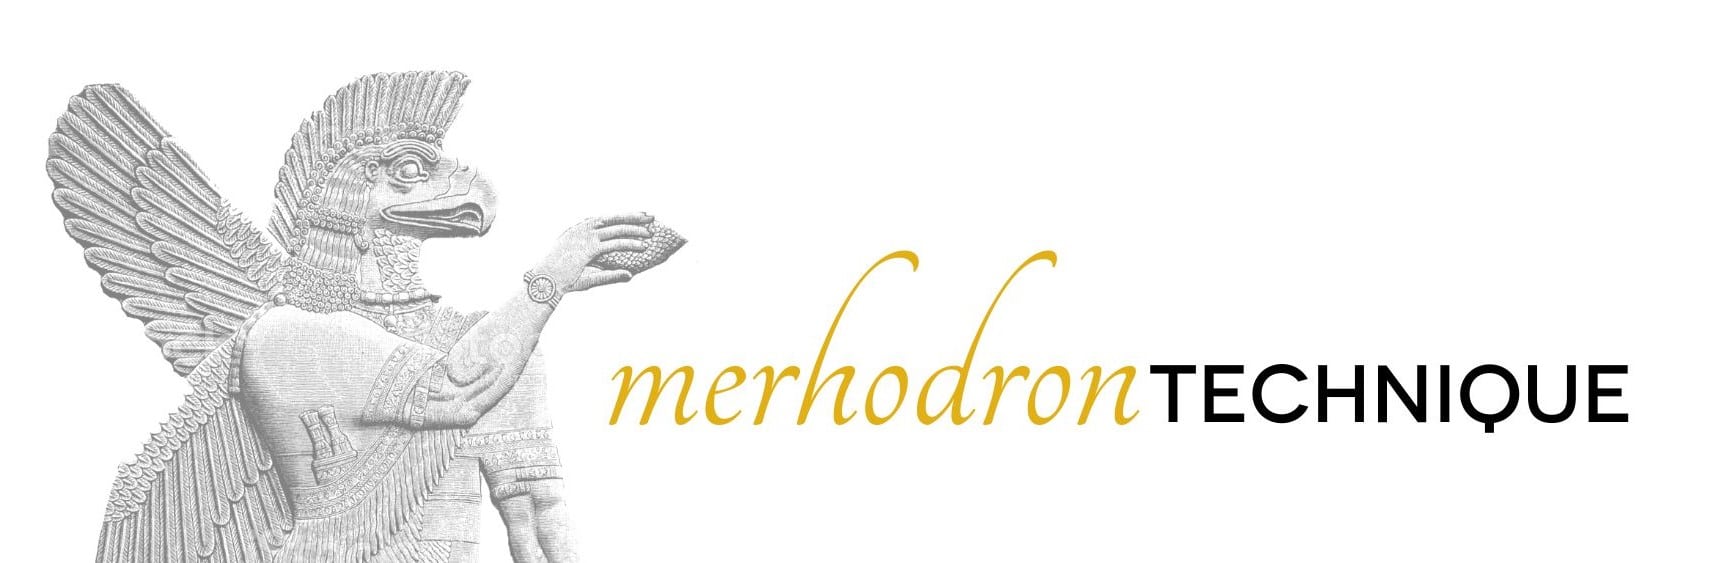 Merhodron Expert